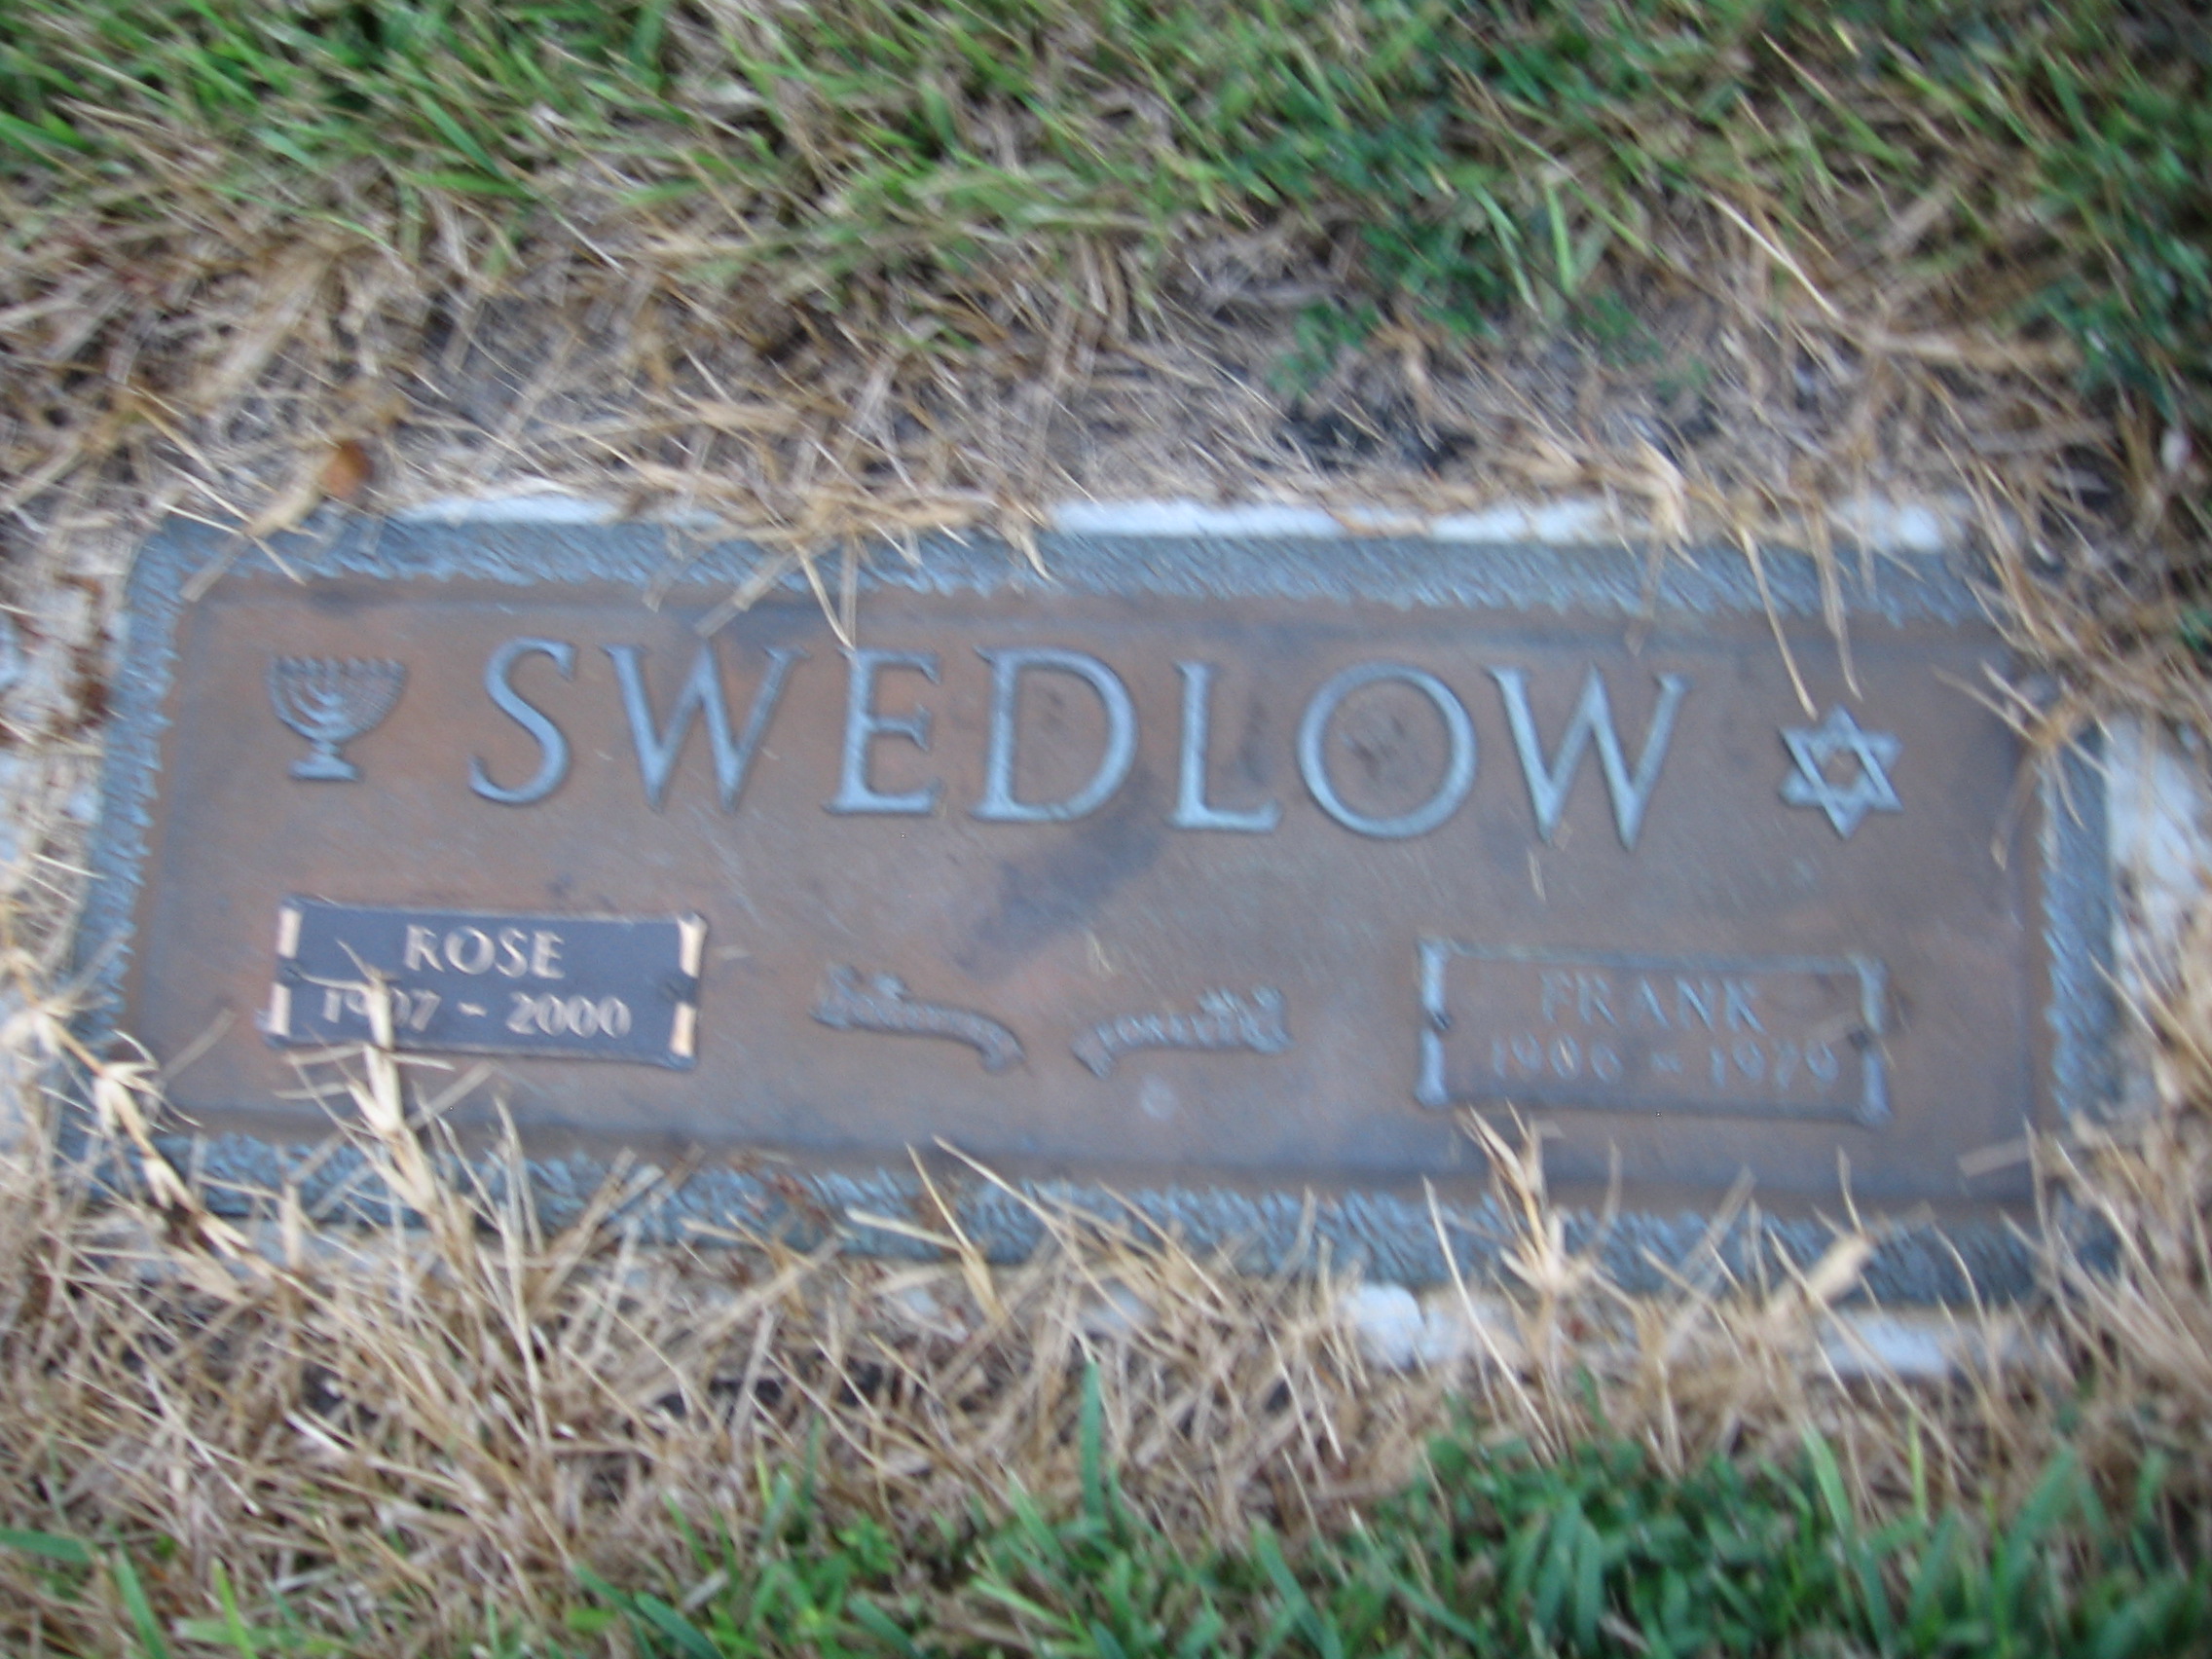 Rose Swedlow